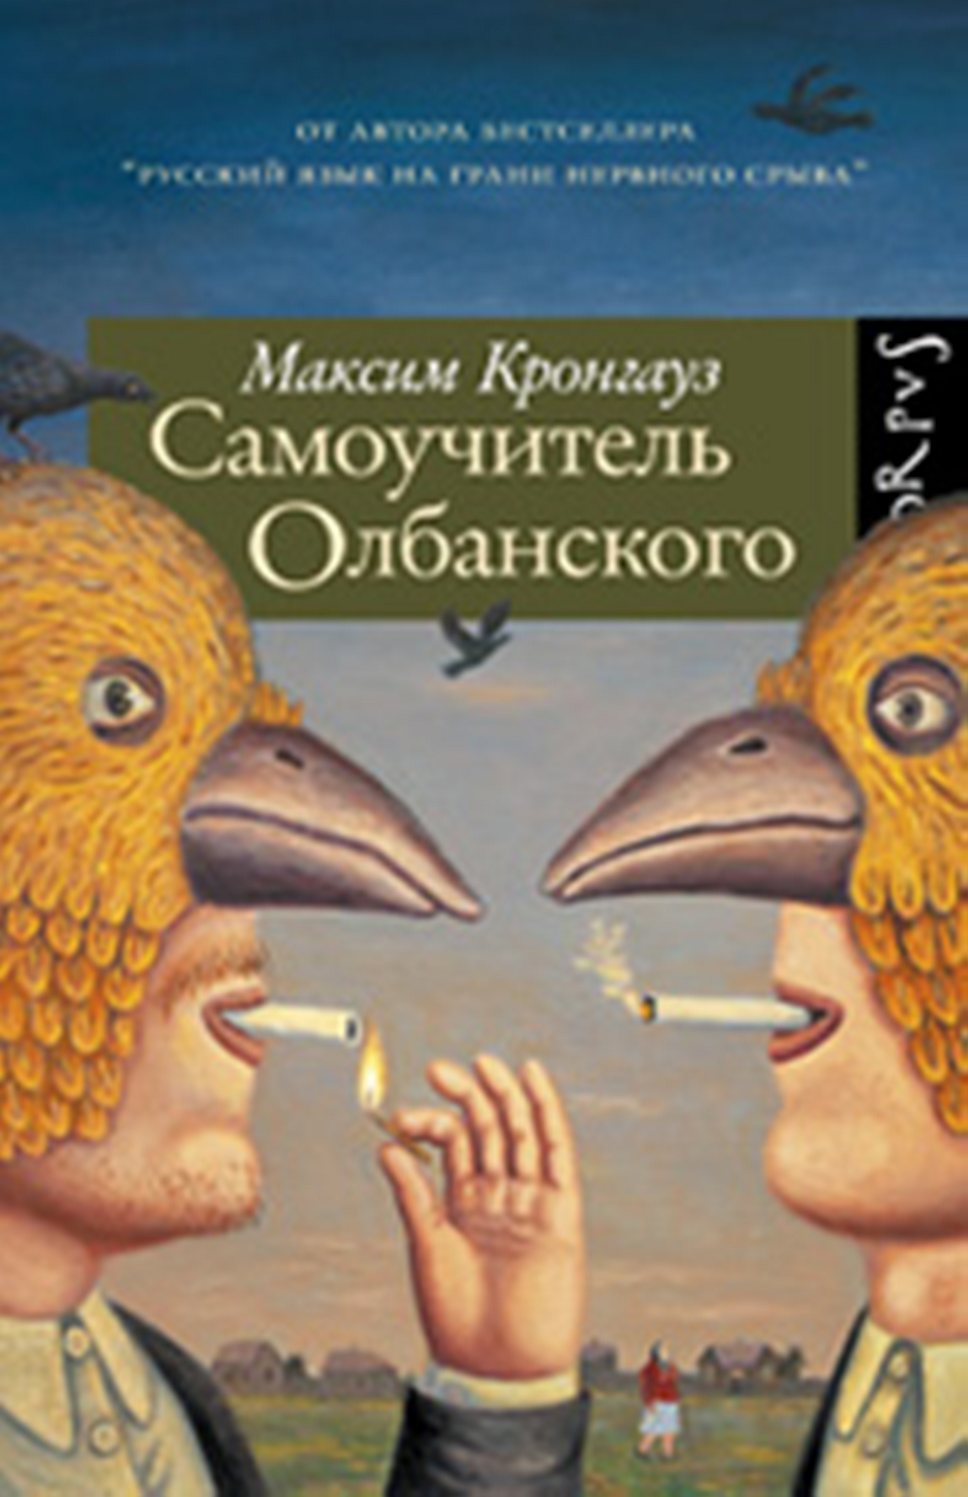 Книга Максима Кронгауза &quot;Самоучитель олбанского&quot; вышла в издательстве Corpus